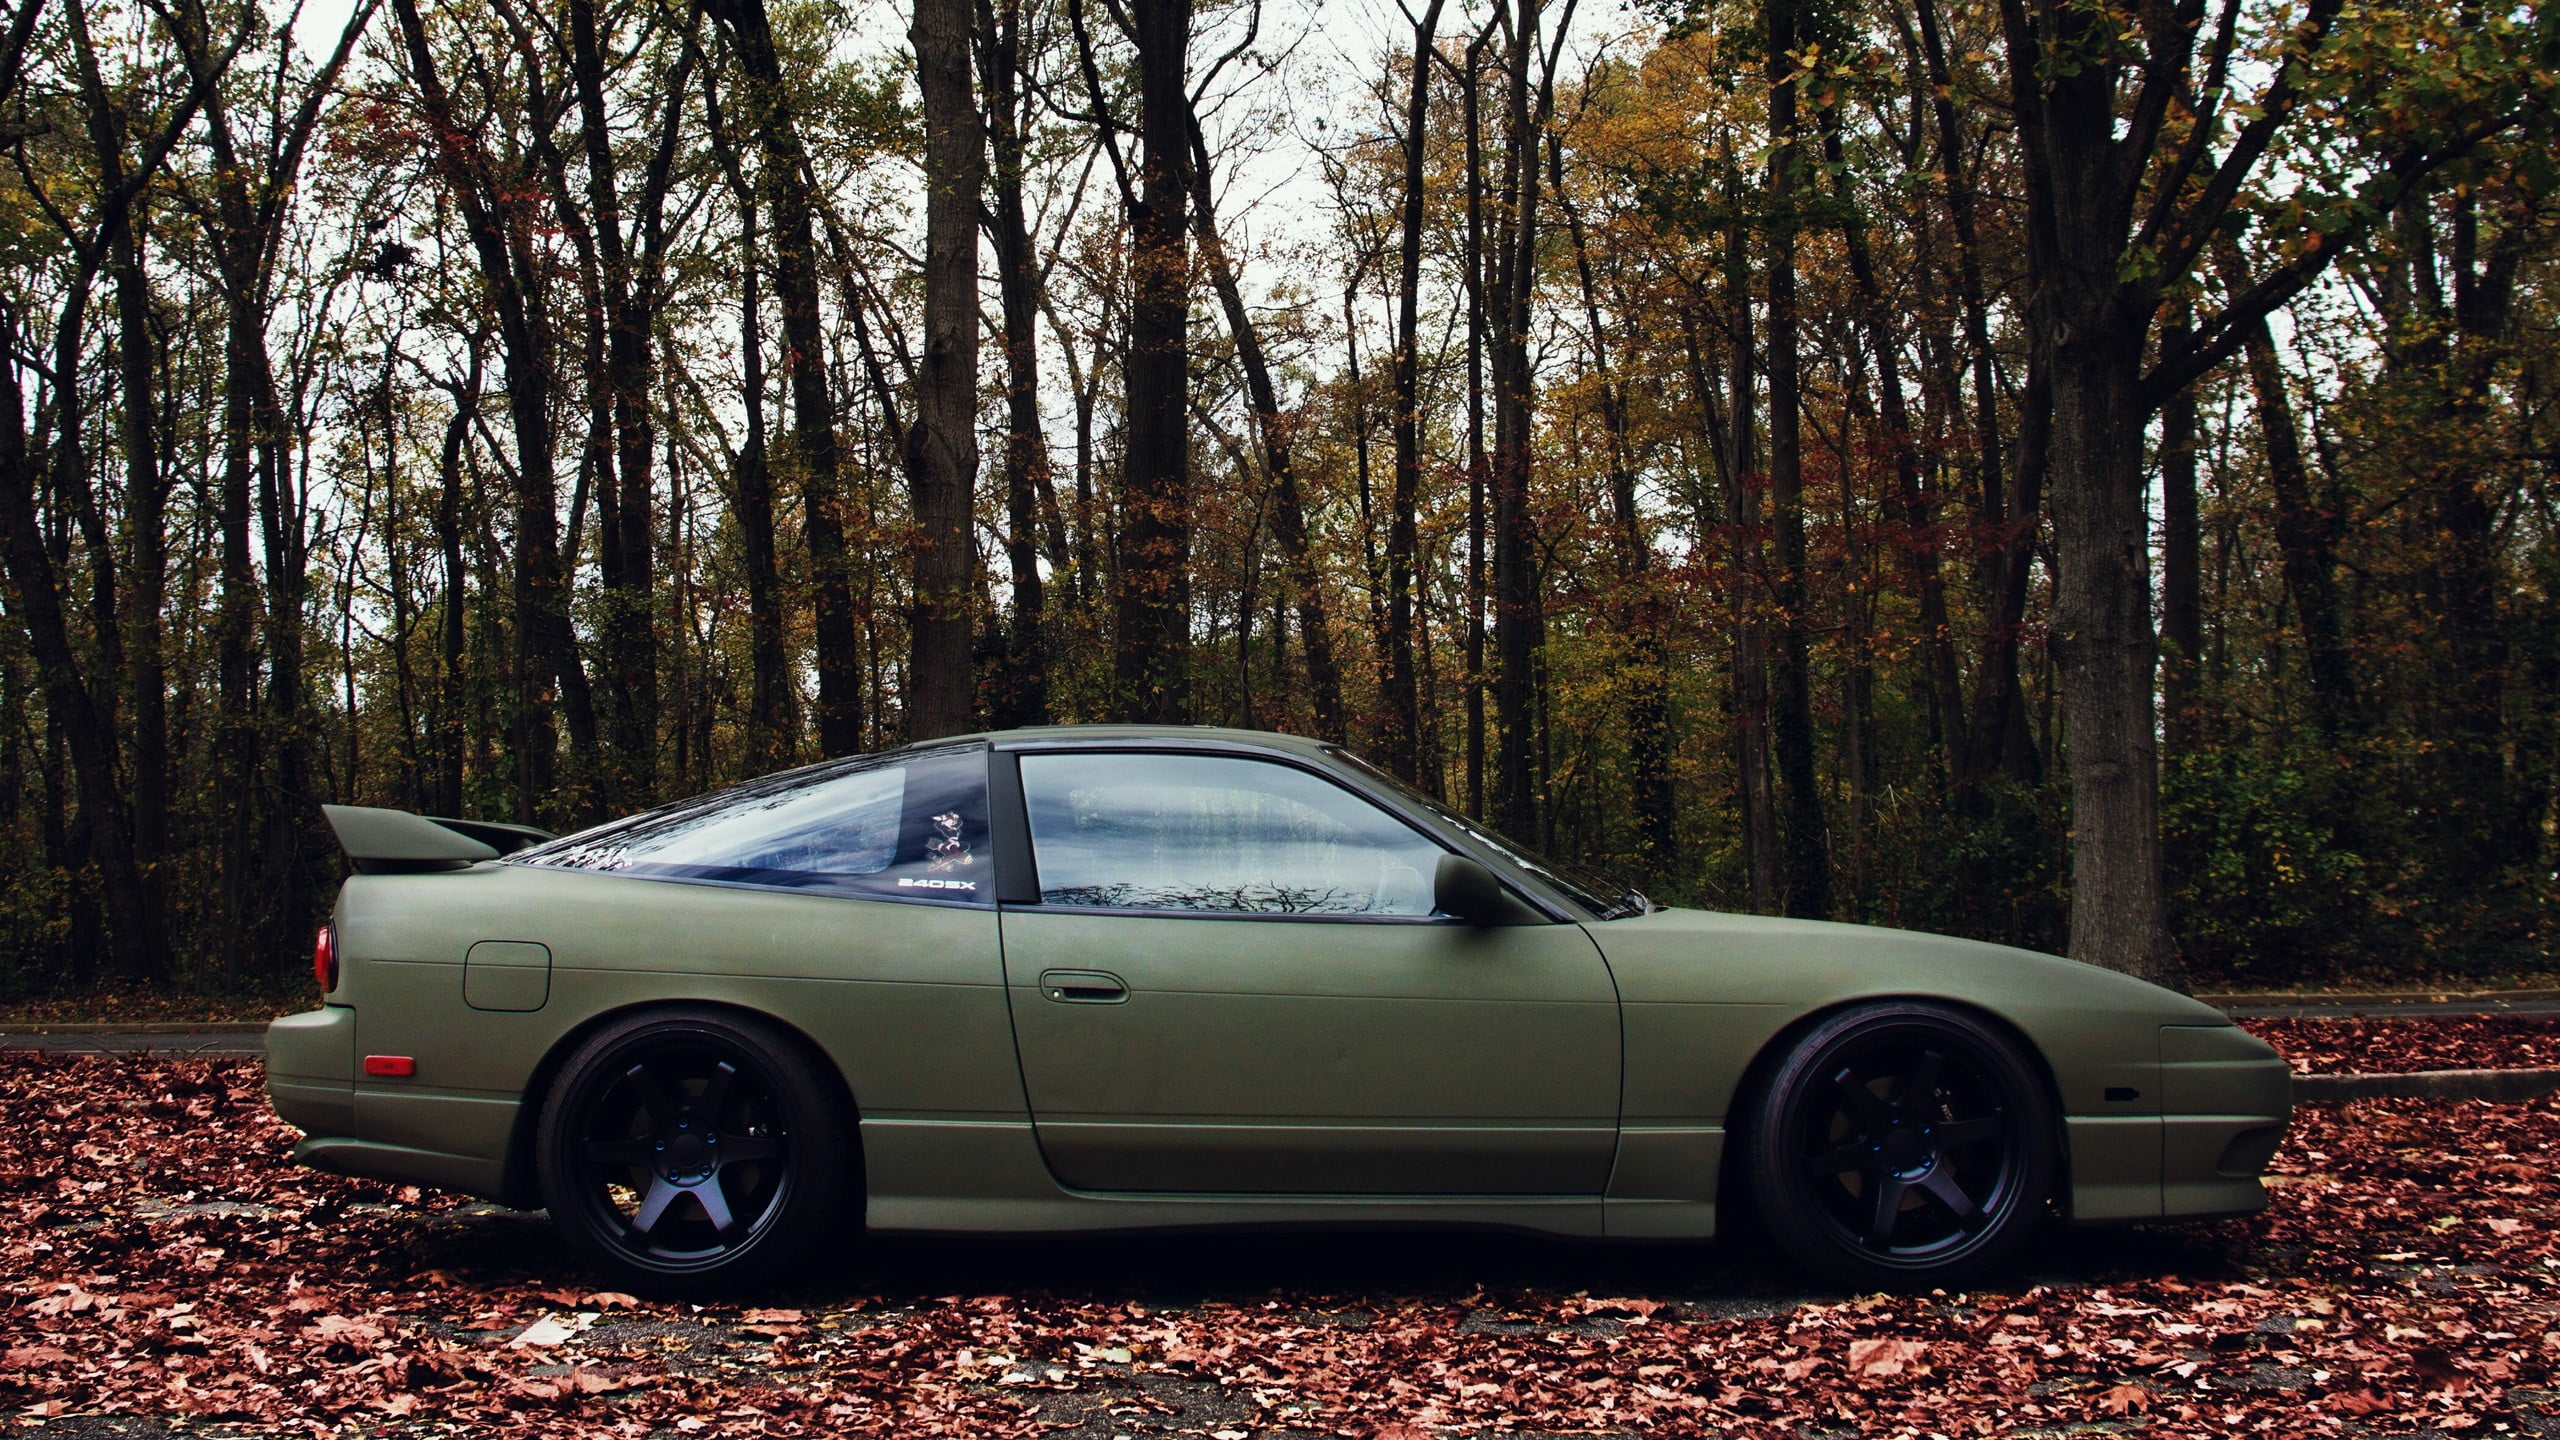 Green Coupe, Nissan, 180sx, Car, Jdm Hd Wallpaper - Nissan 180sx Jdm , HD Wallpaper & Backgrounds